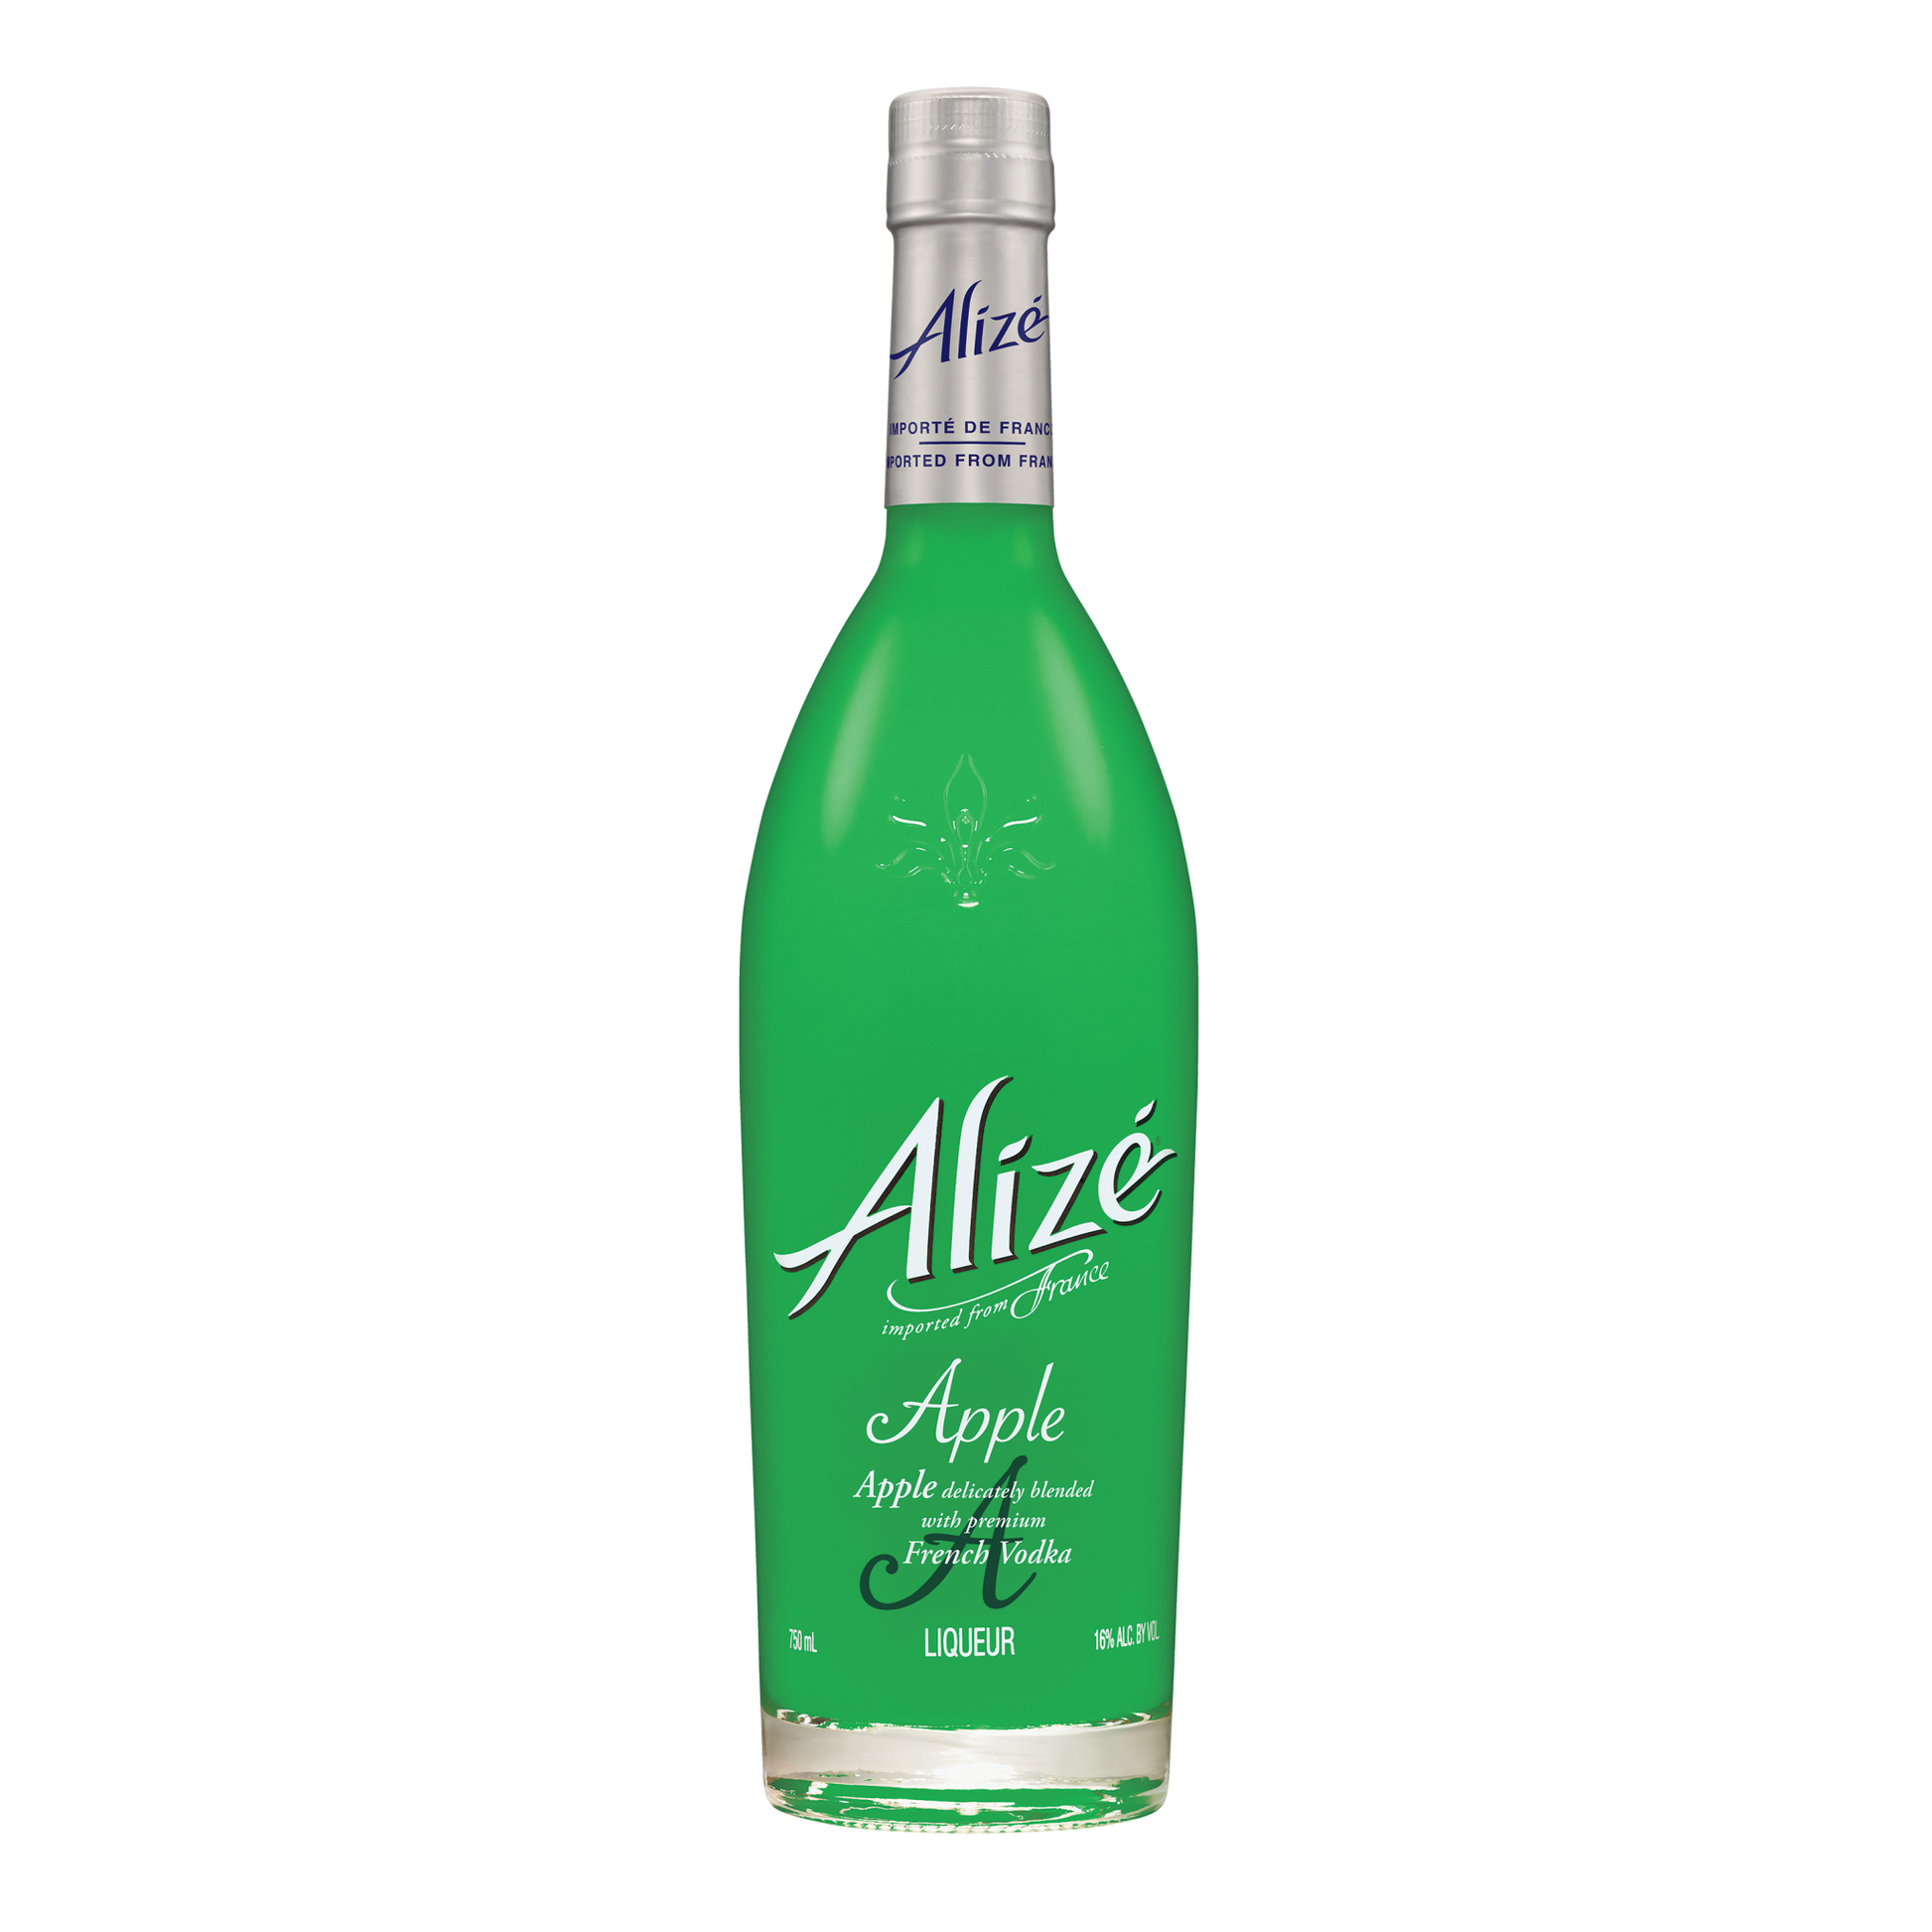 Alize Apple French Vodka Liqueur/Liquor - Liquor Geeks